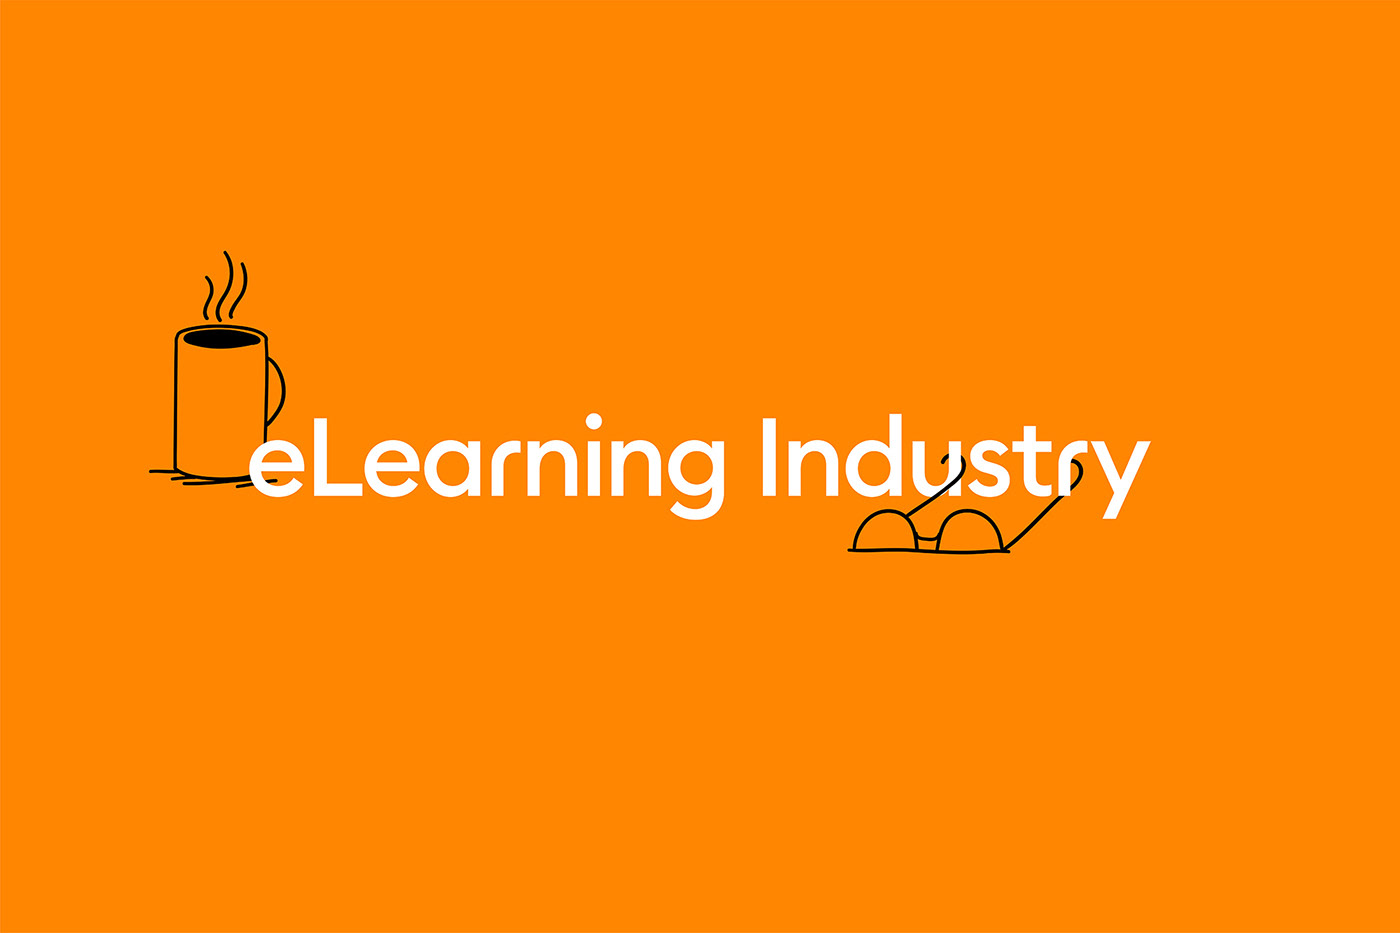 agdesignagency bee community Education eLearning elearningindustry Platform usa wisdom